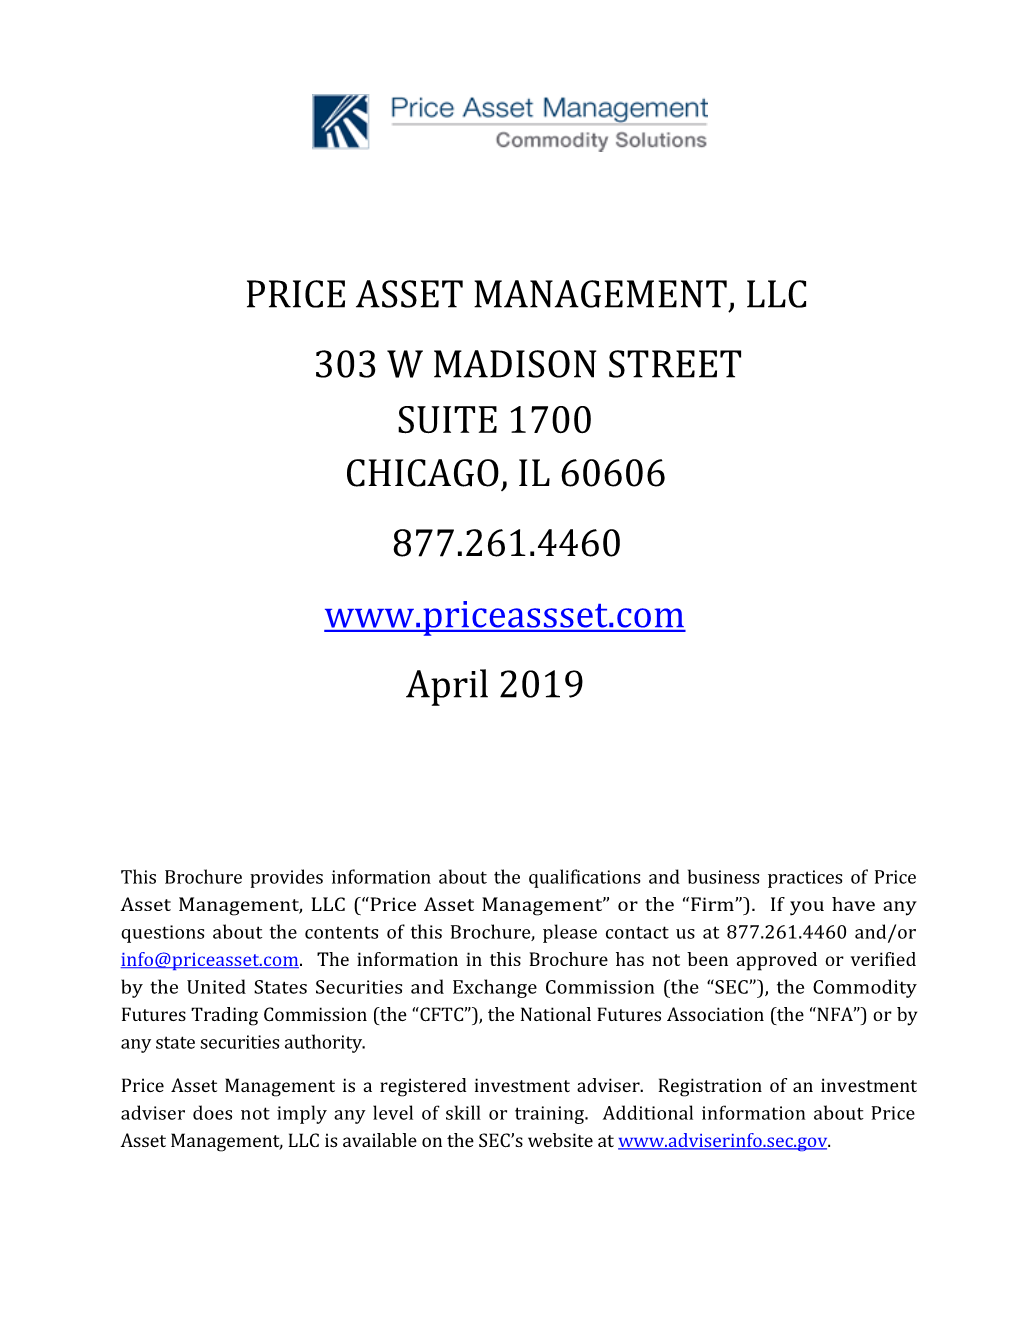 PRICE ASSET MANAGEMENT, LLC 303 W MADISON STREET SUITE 1700 CHICAGO, IL 60606 877.261.4460 April 2019